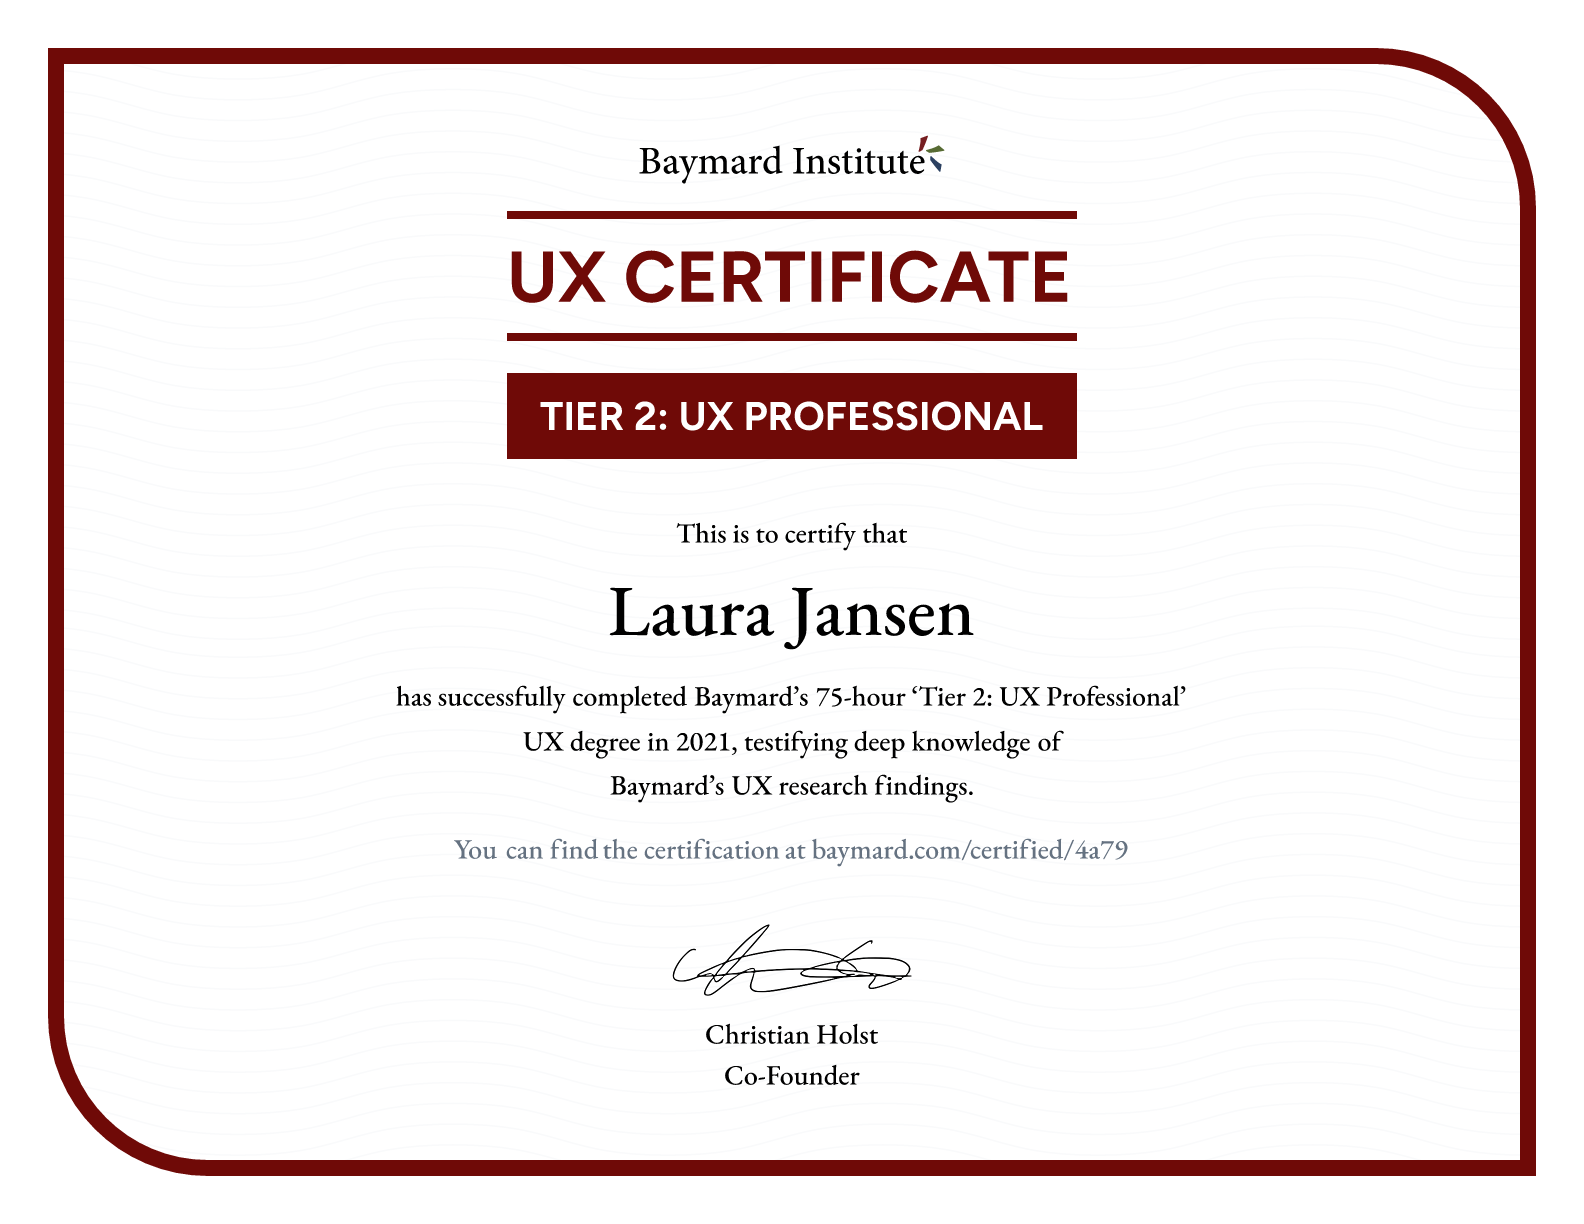 Laura Jansen’s certificate